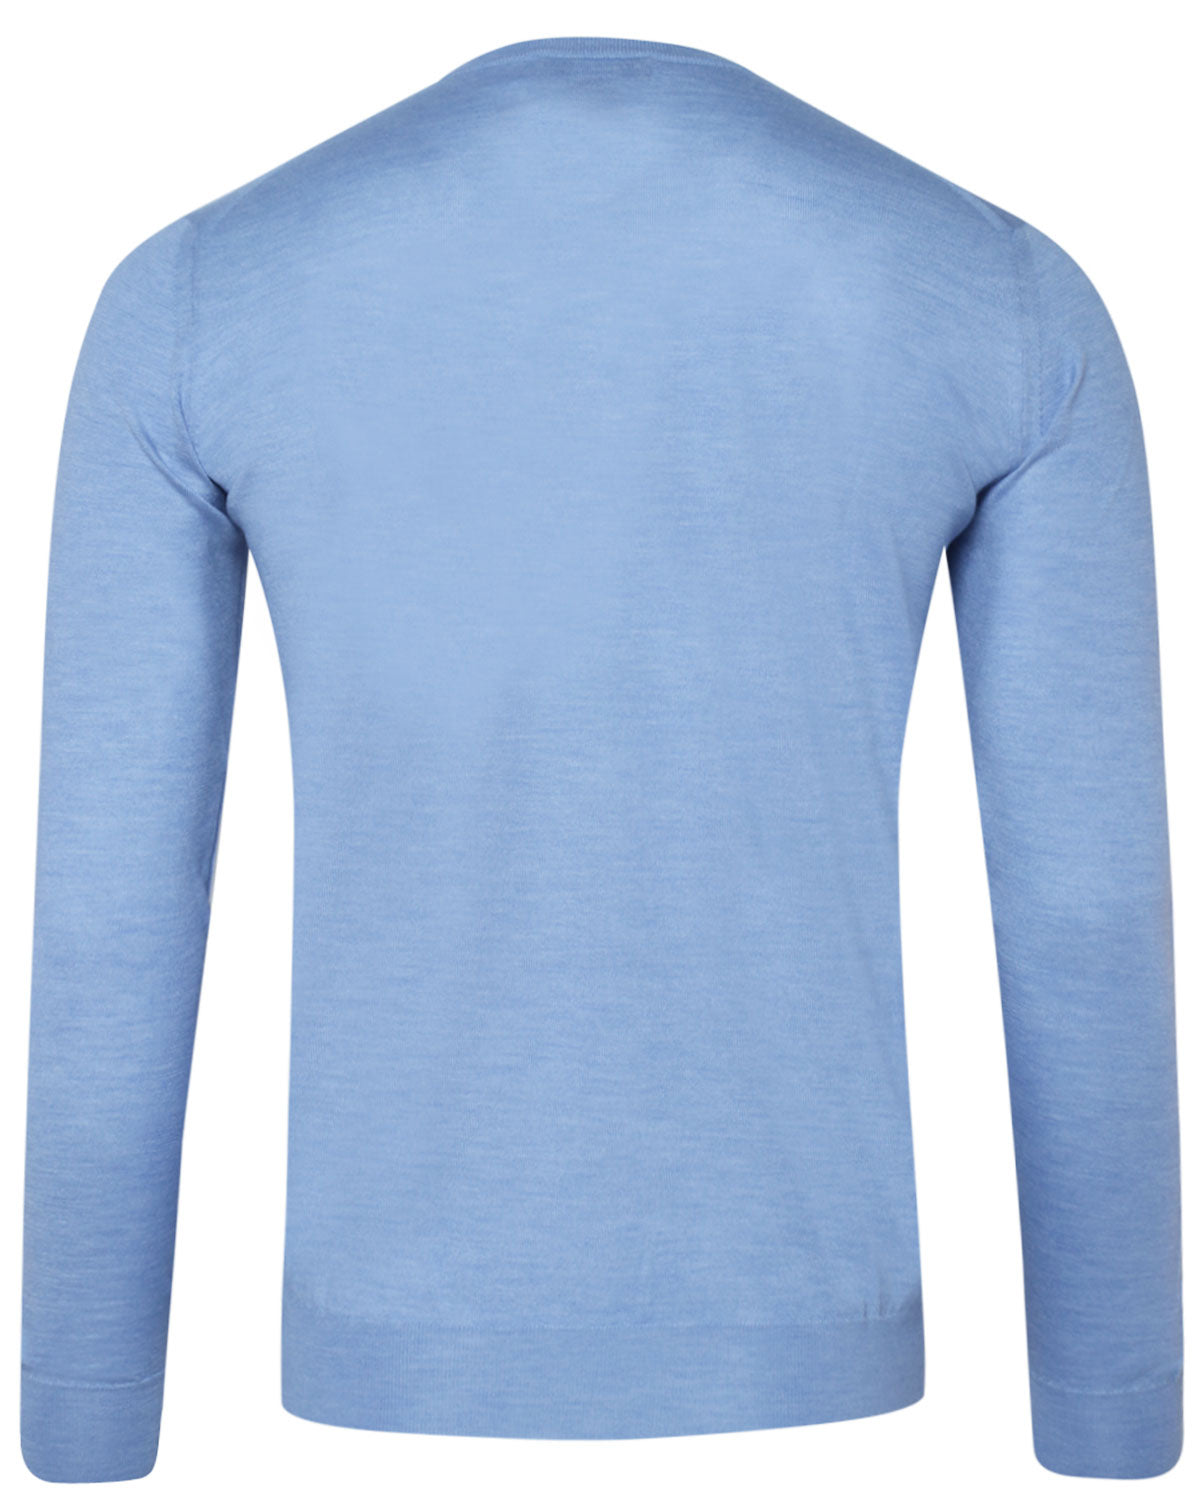 Sky Blue Cashmere Blend Crewneck Sweater